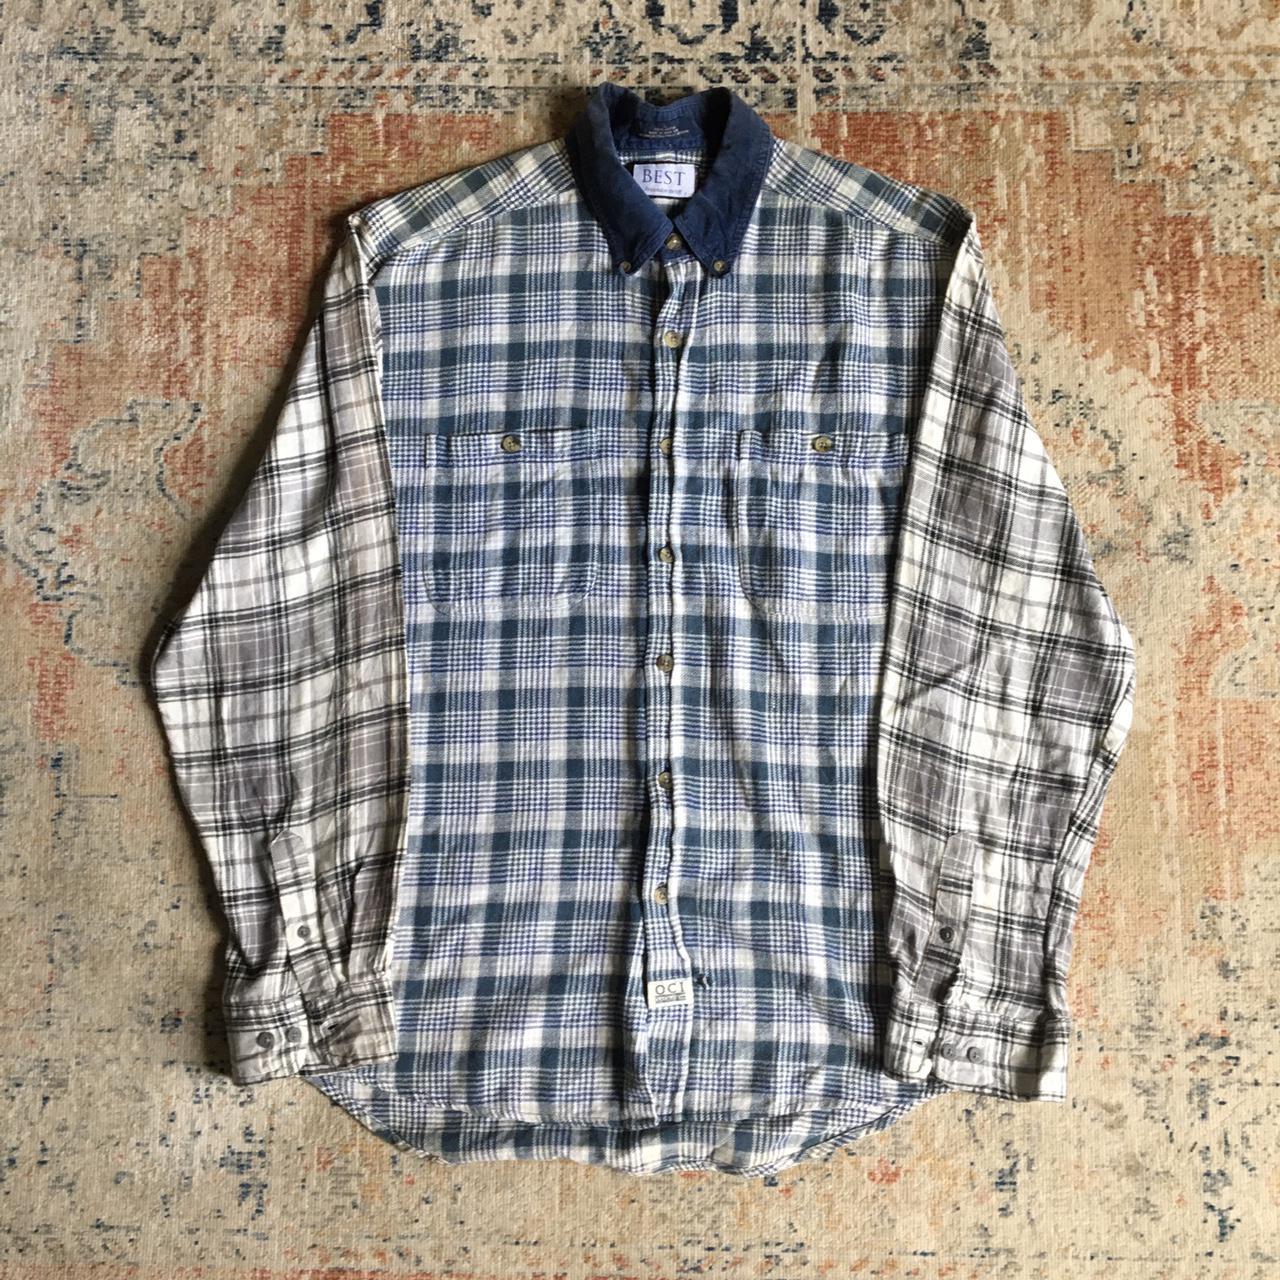 Vintage flannel shirt Vintage rebuild flannel... - Depop